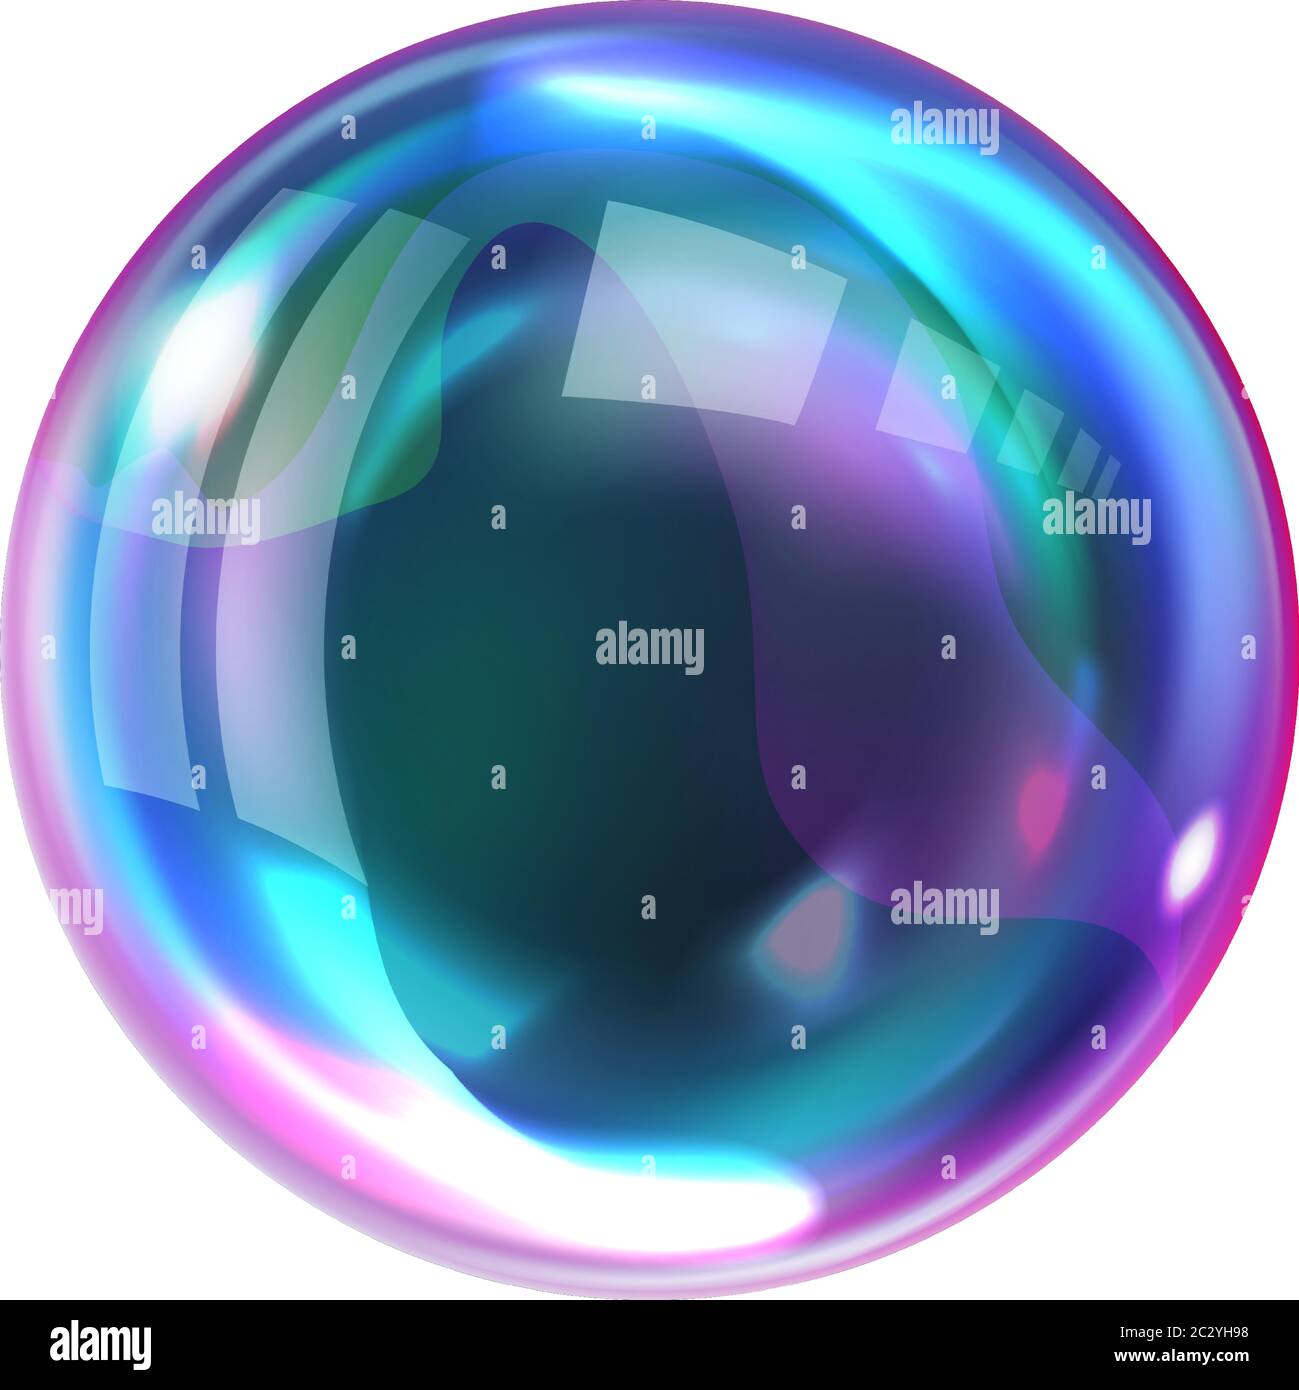 Bolla di sapone, sfera d'aria trasparente realistica di colori arcobaleno con riflessi e luci isolate su sfondo bianco, illustrazioni vettoriali Illustrazione Vettoriale